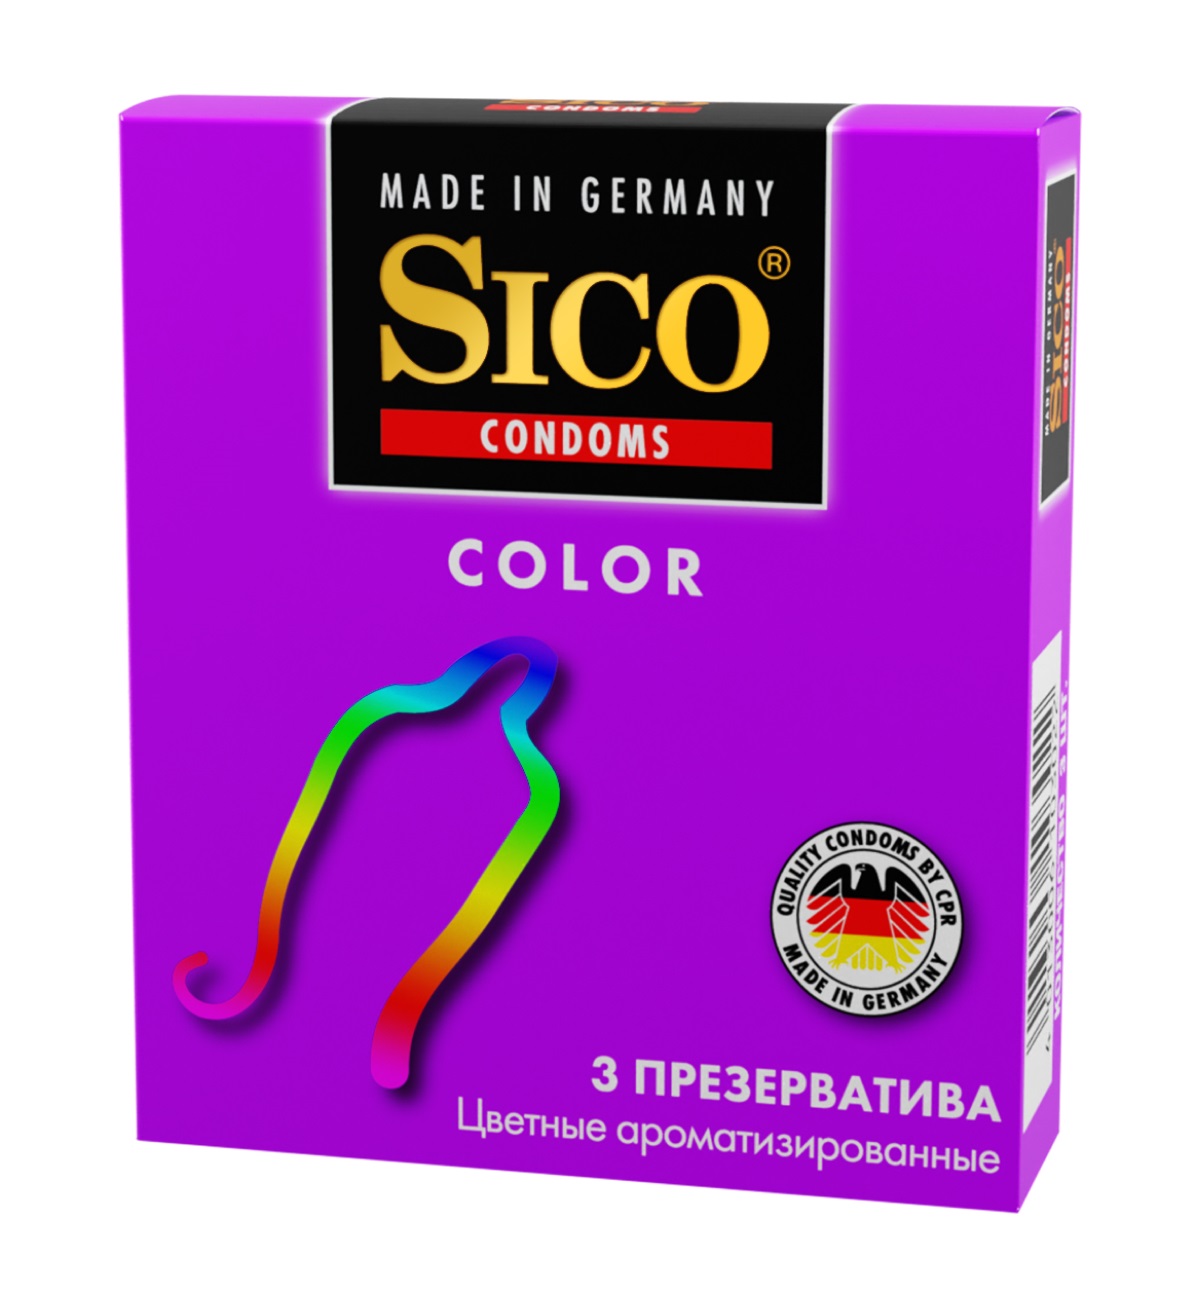 Сико презервативы Колор цветные ароматиз. №3